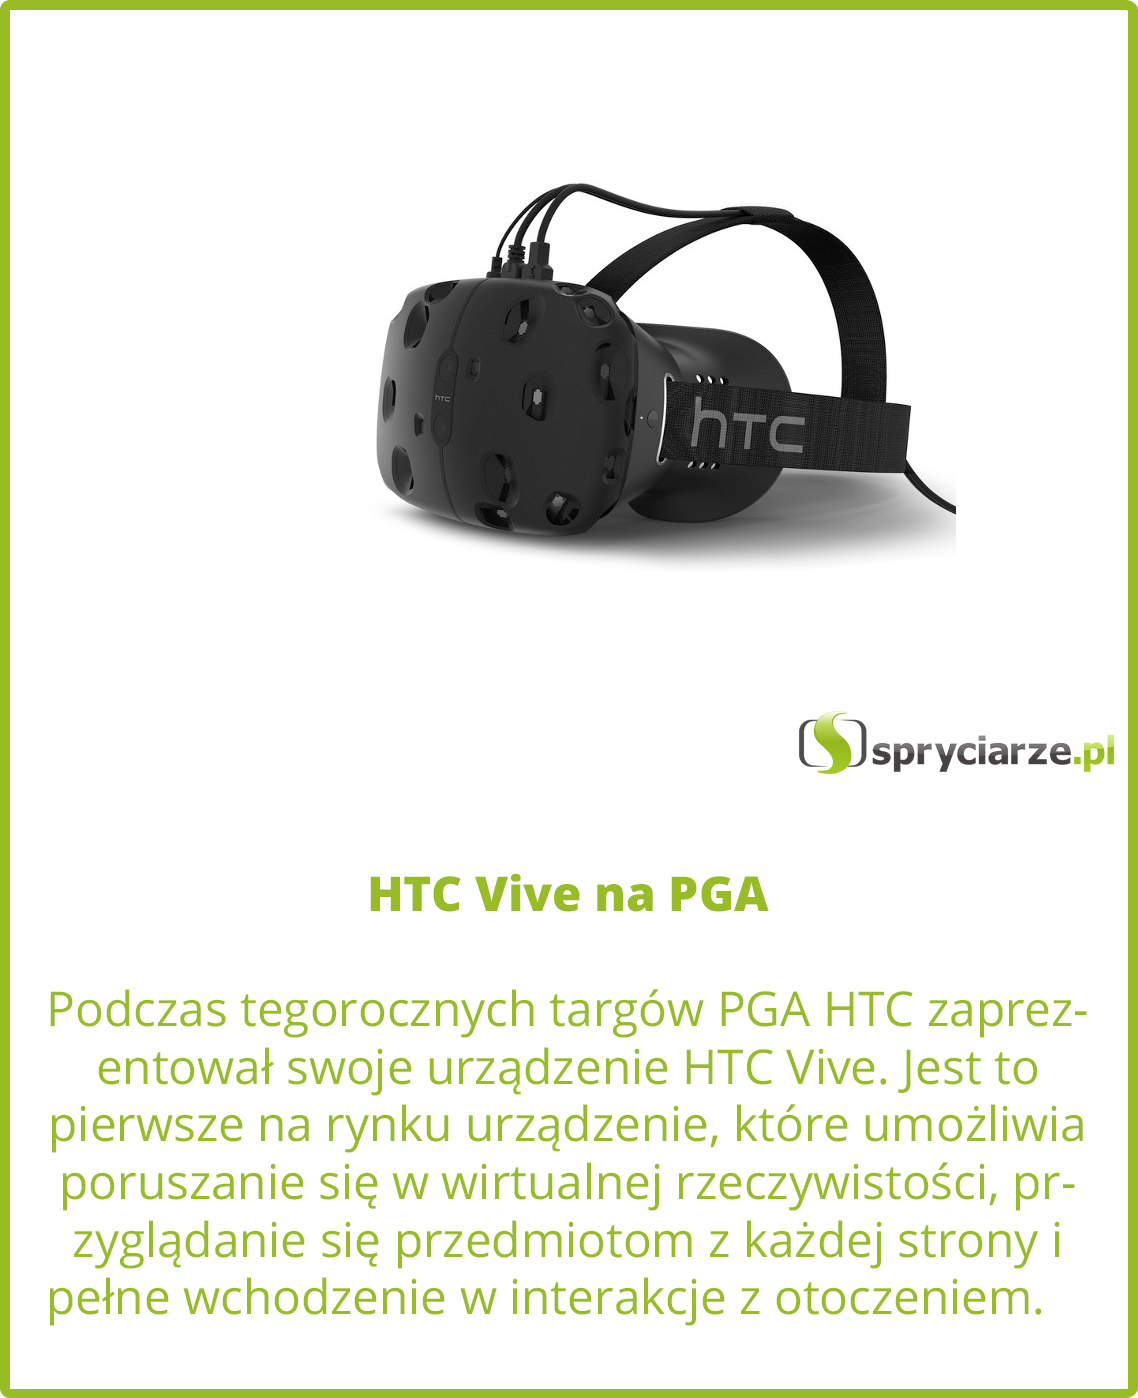 HTC Vive na PGA